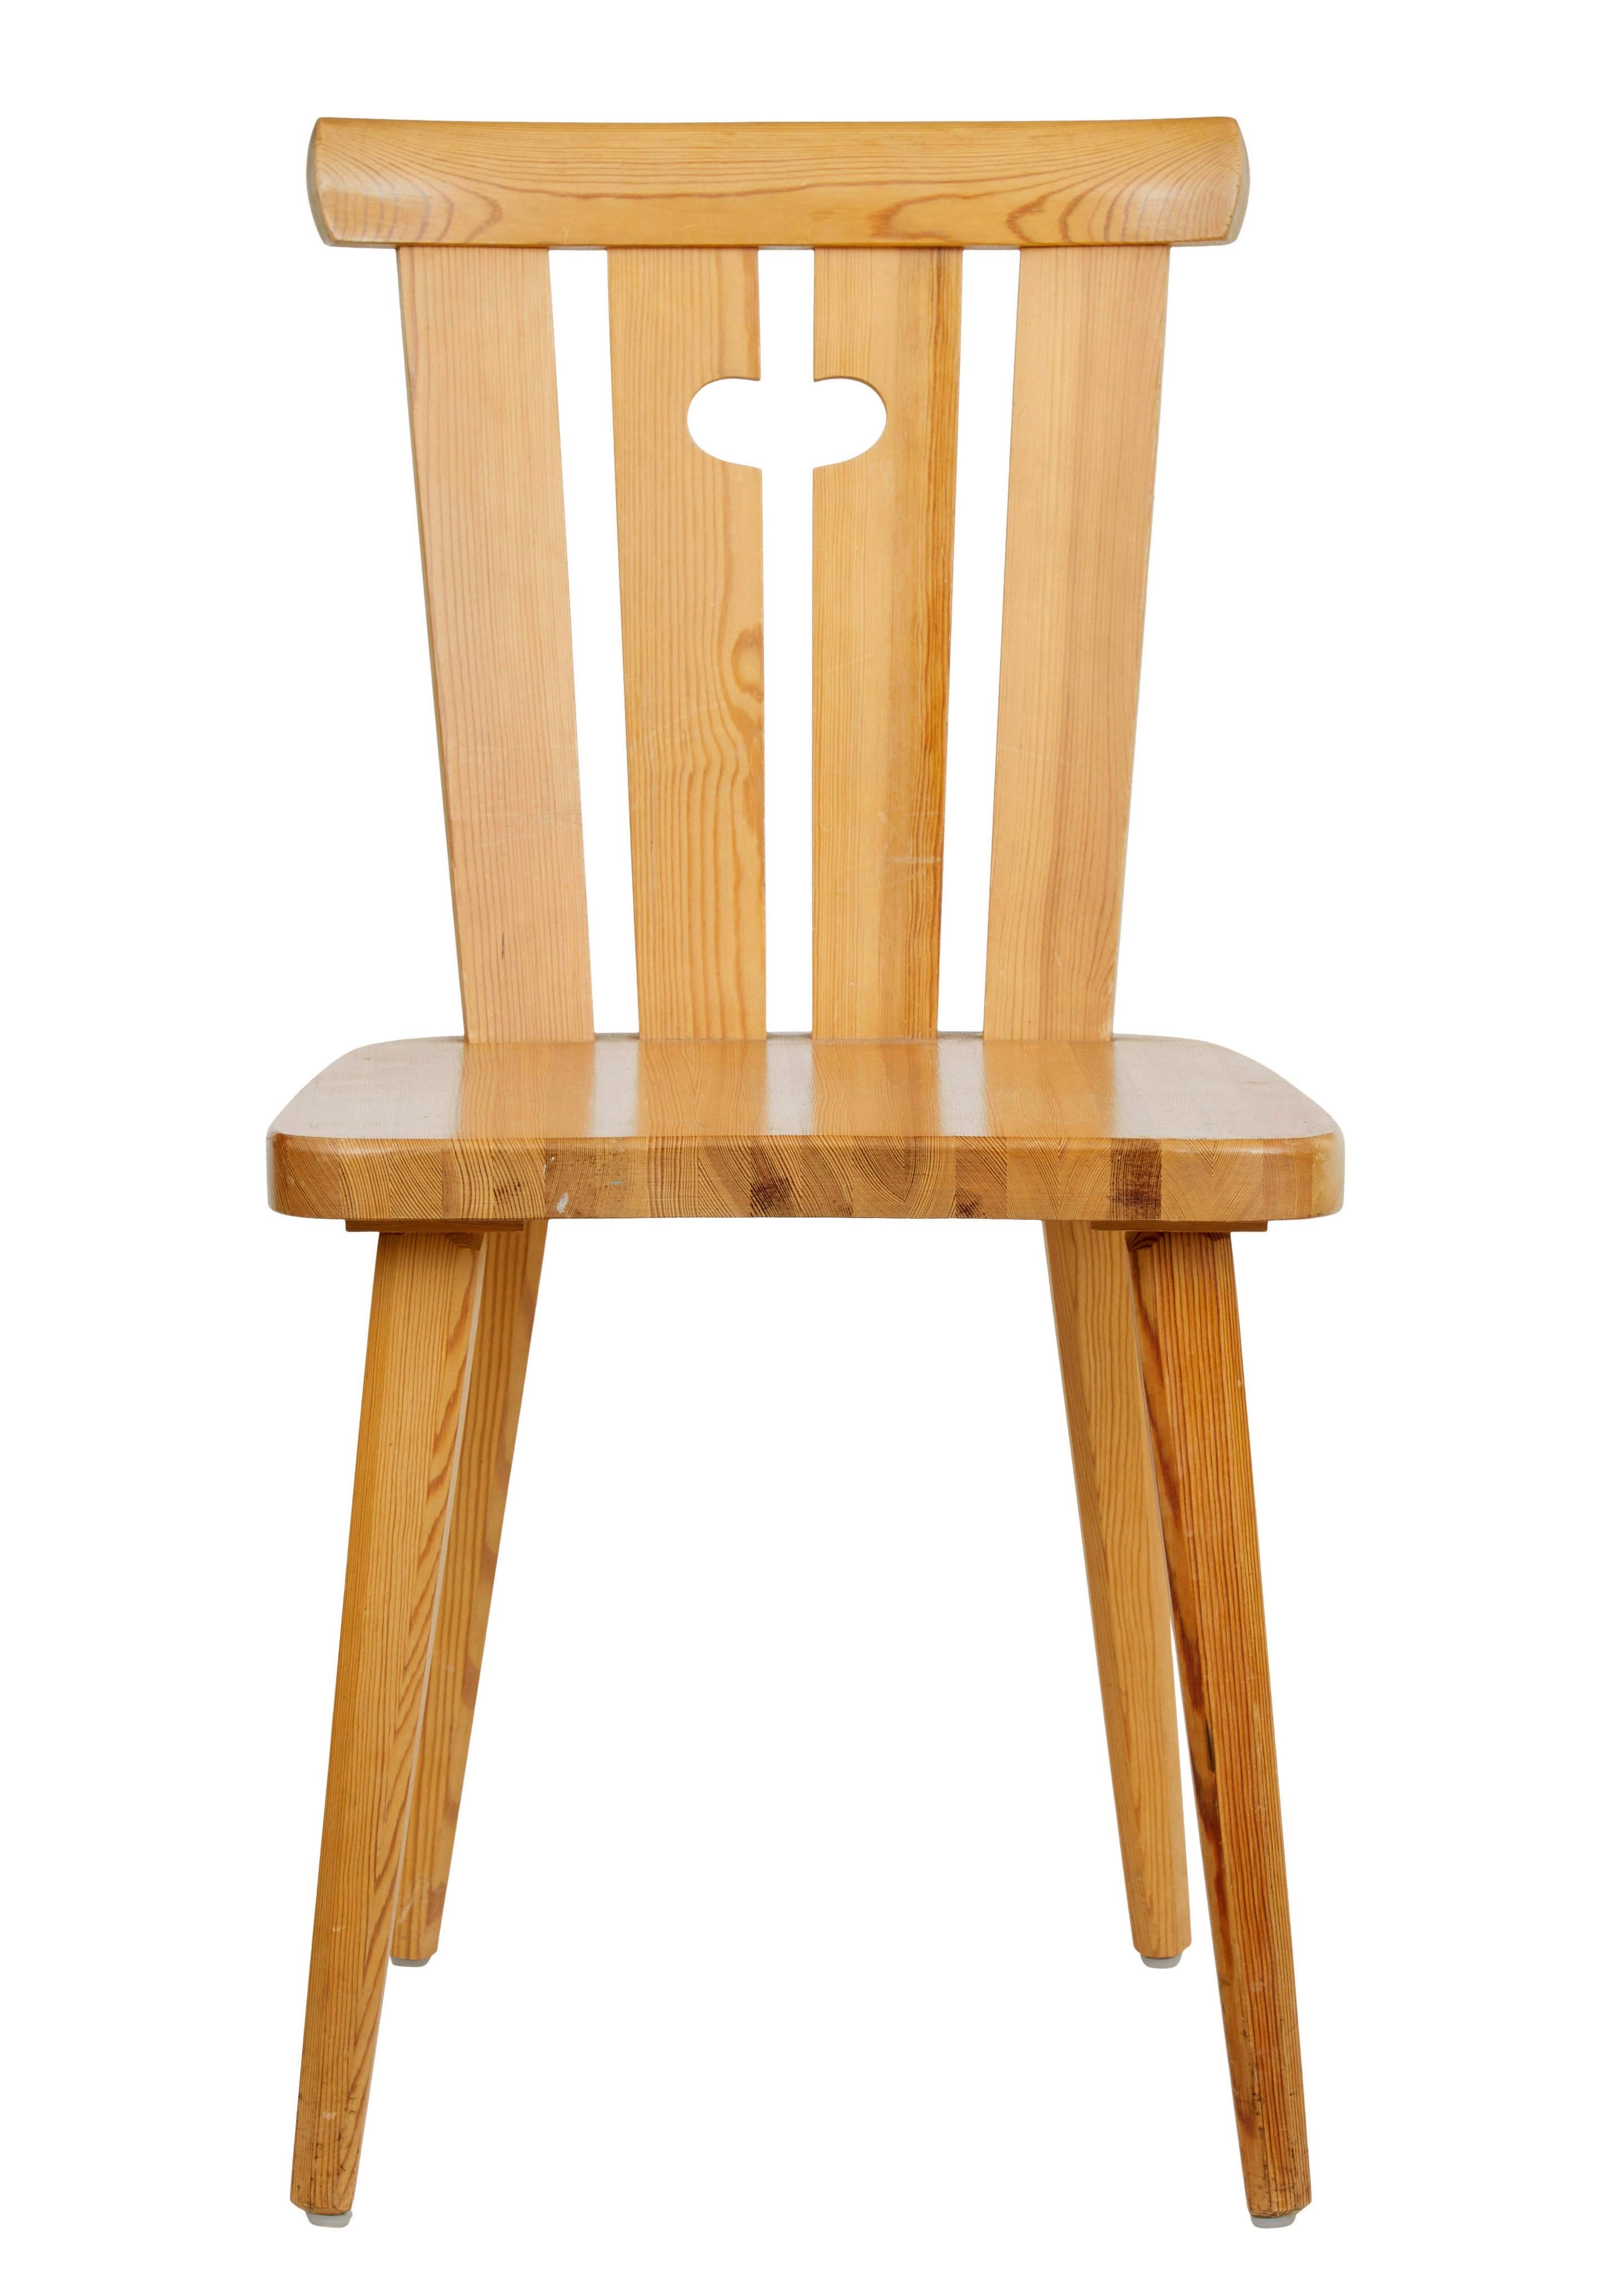 Praktischer Satz schwedischer Esszimmerstühle aus den 1970er Jahren.

Geformte Rückenlehnen mit 4 Rückenlatten und einem ausgeschnittenen Tragegriff. Schlichter Sitz, auf konischen Beinen stehend.

Einfaches, elegantes Design und bequem.

Gute,